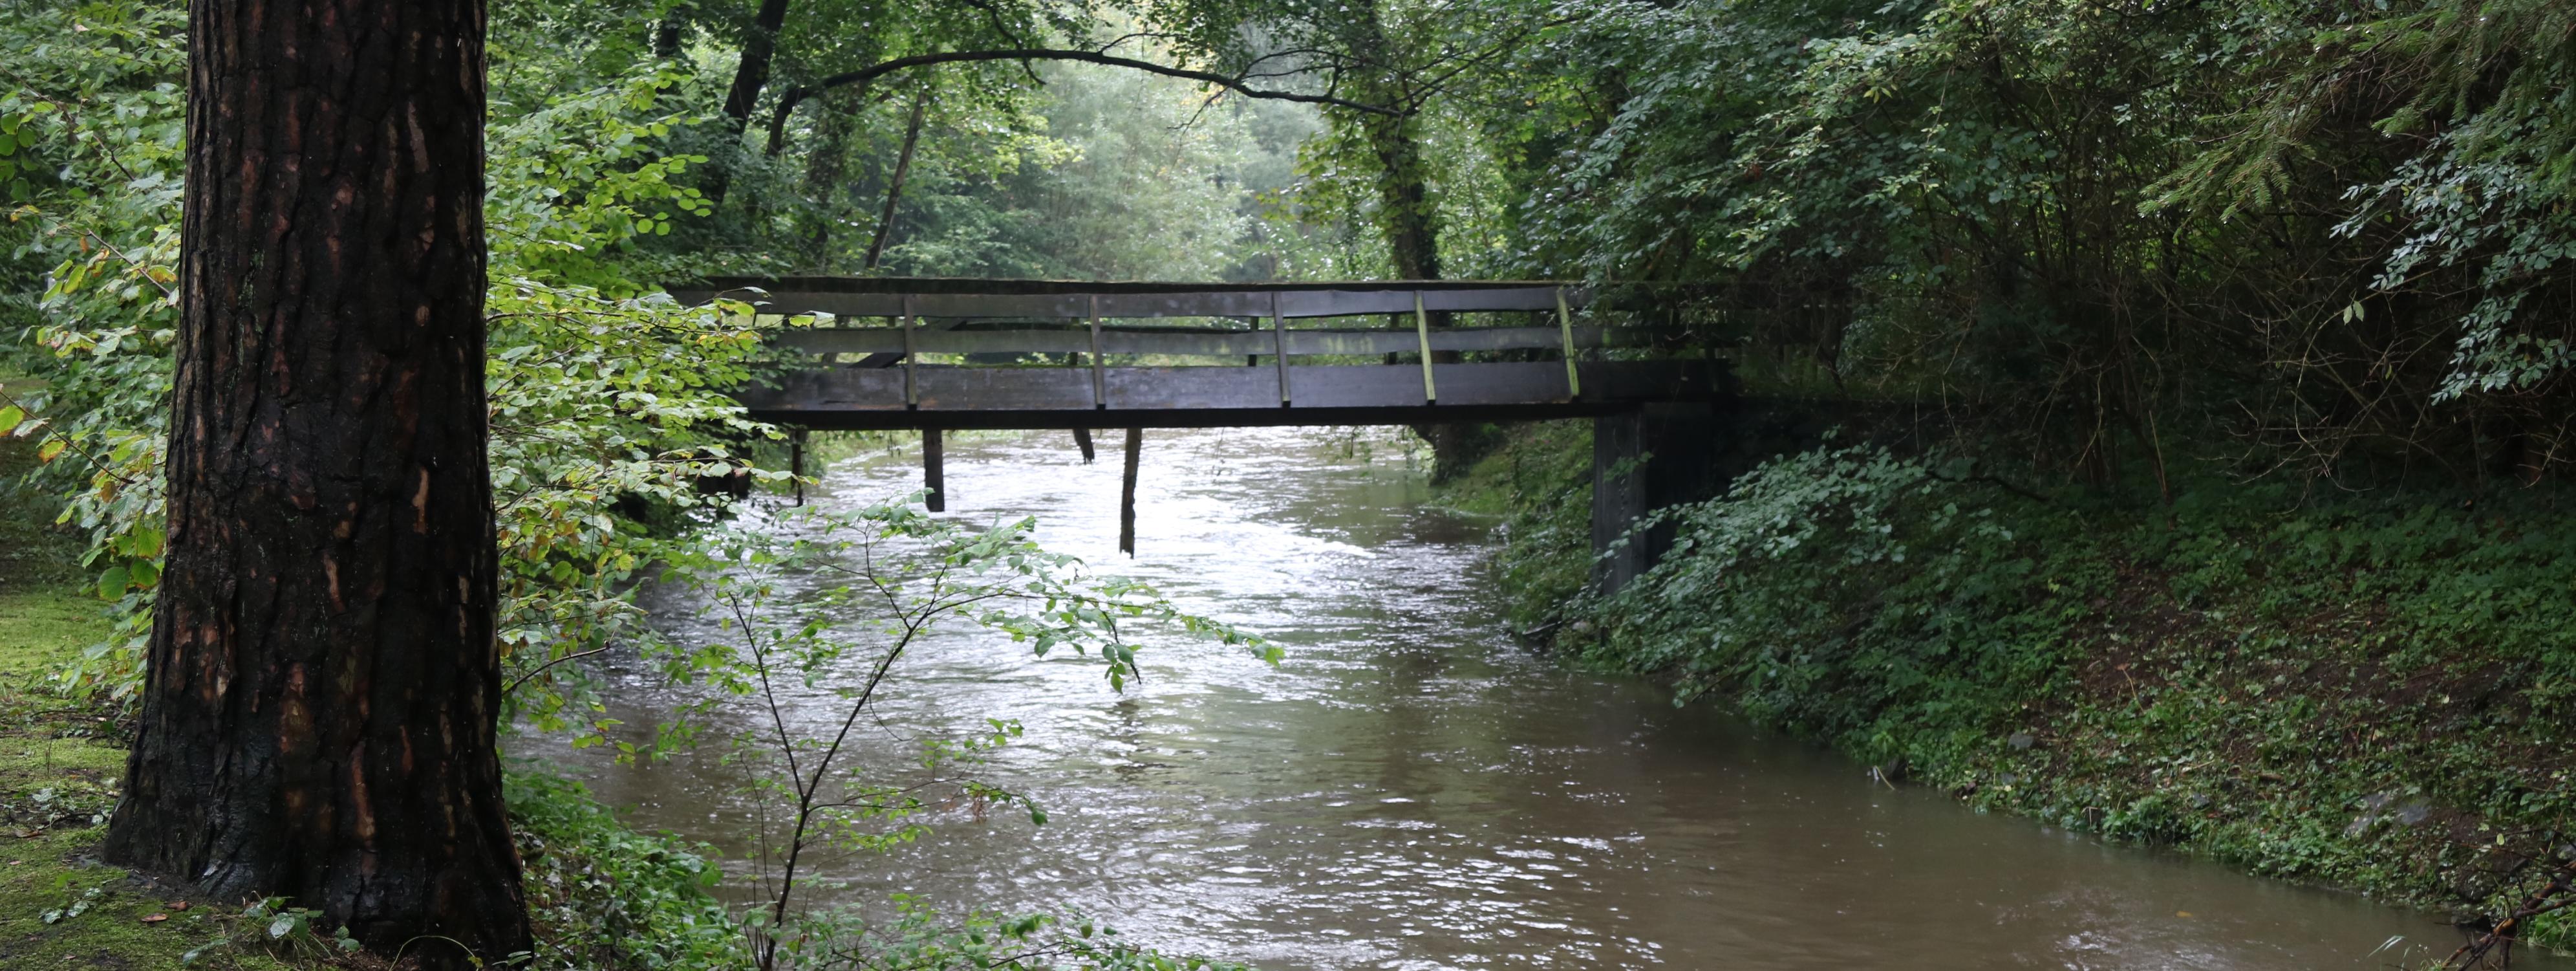 Die Hönne mit angestiegenem Wasserstand, darüber verläuft eine alte Brücke aus Holz